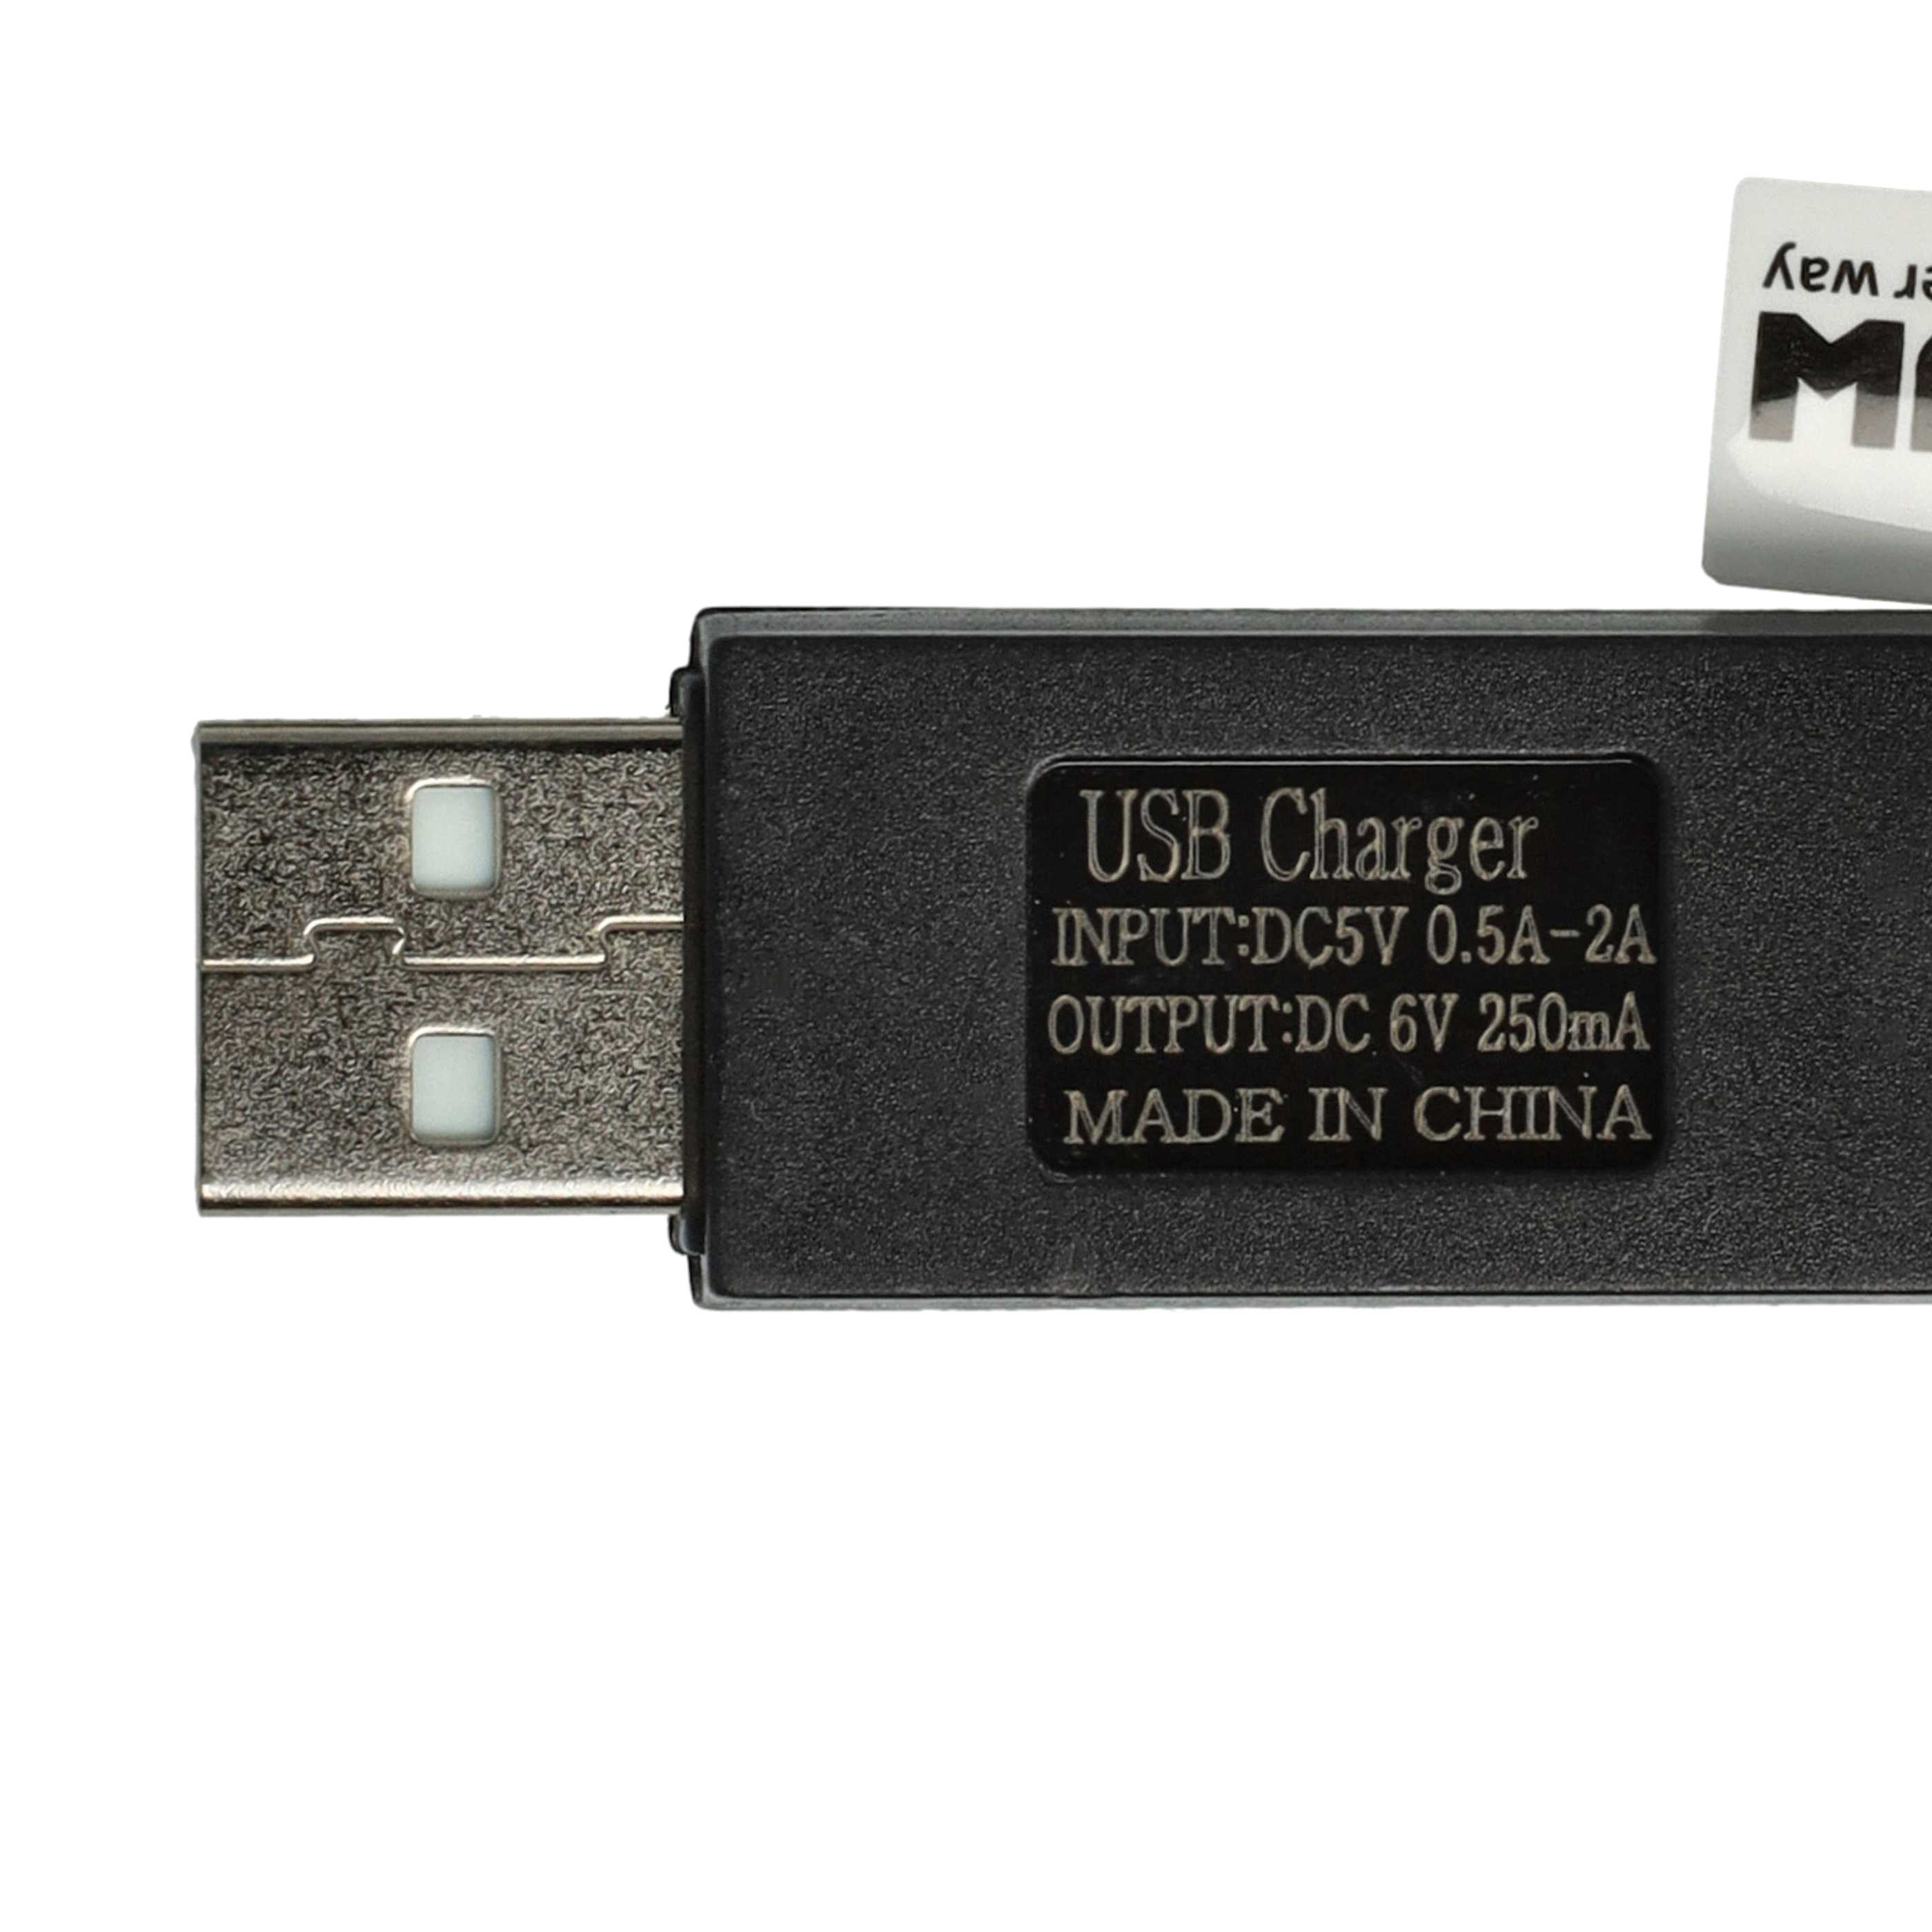 ChargeurUSB pour batterie SM-2P, modélisme RC - 60 cm 6 V